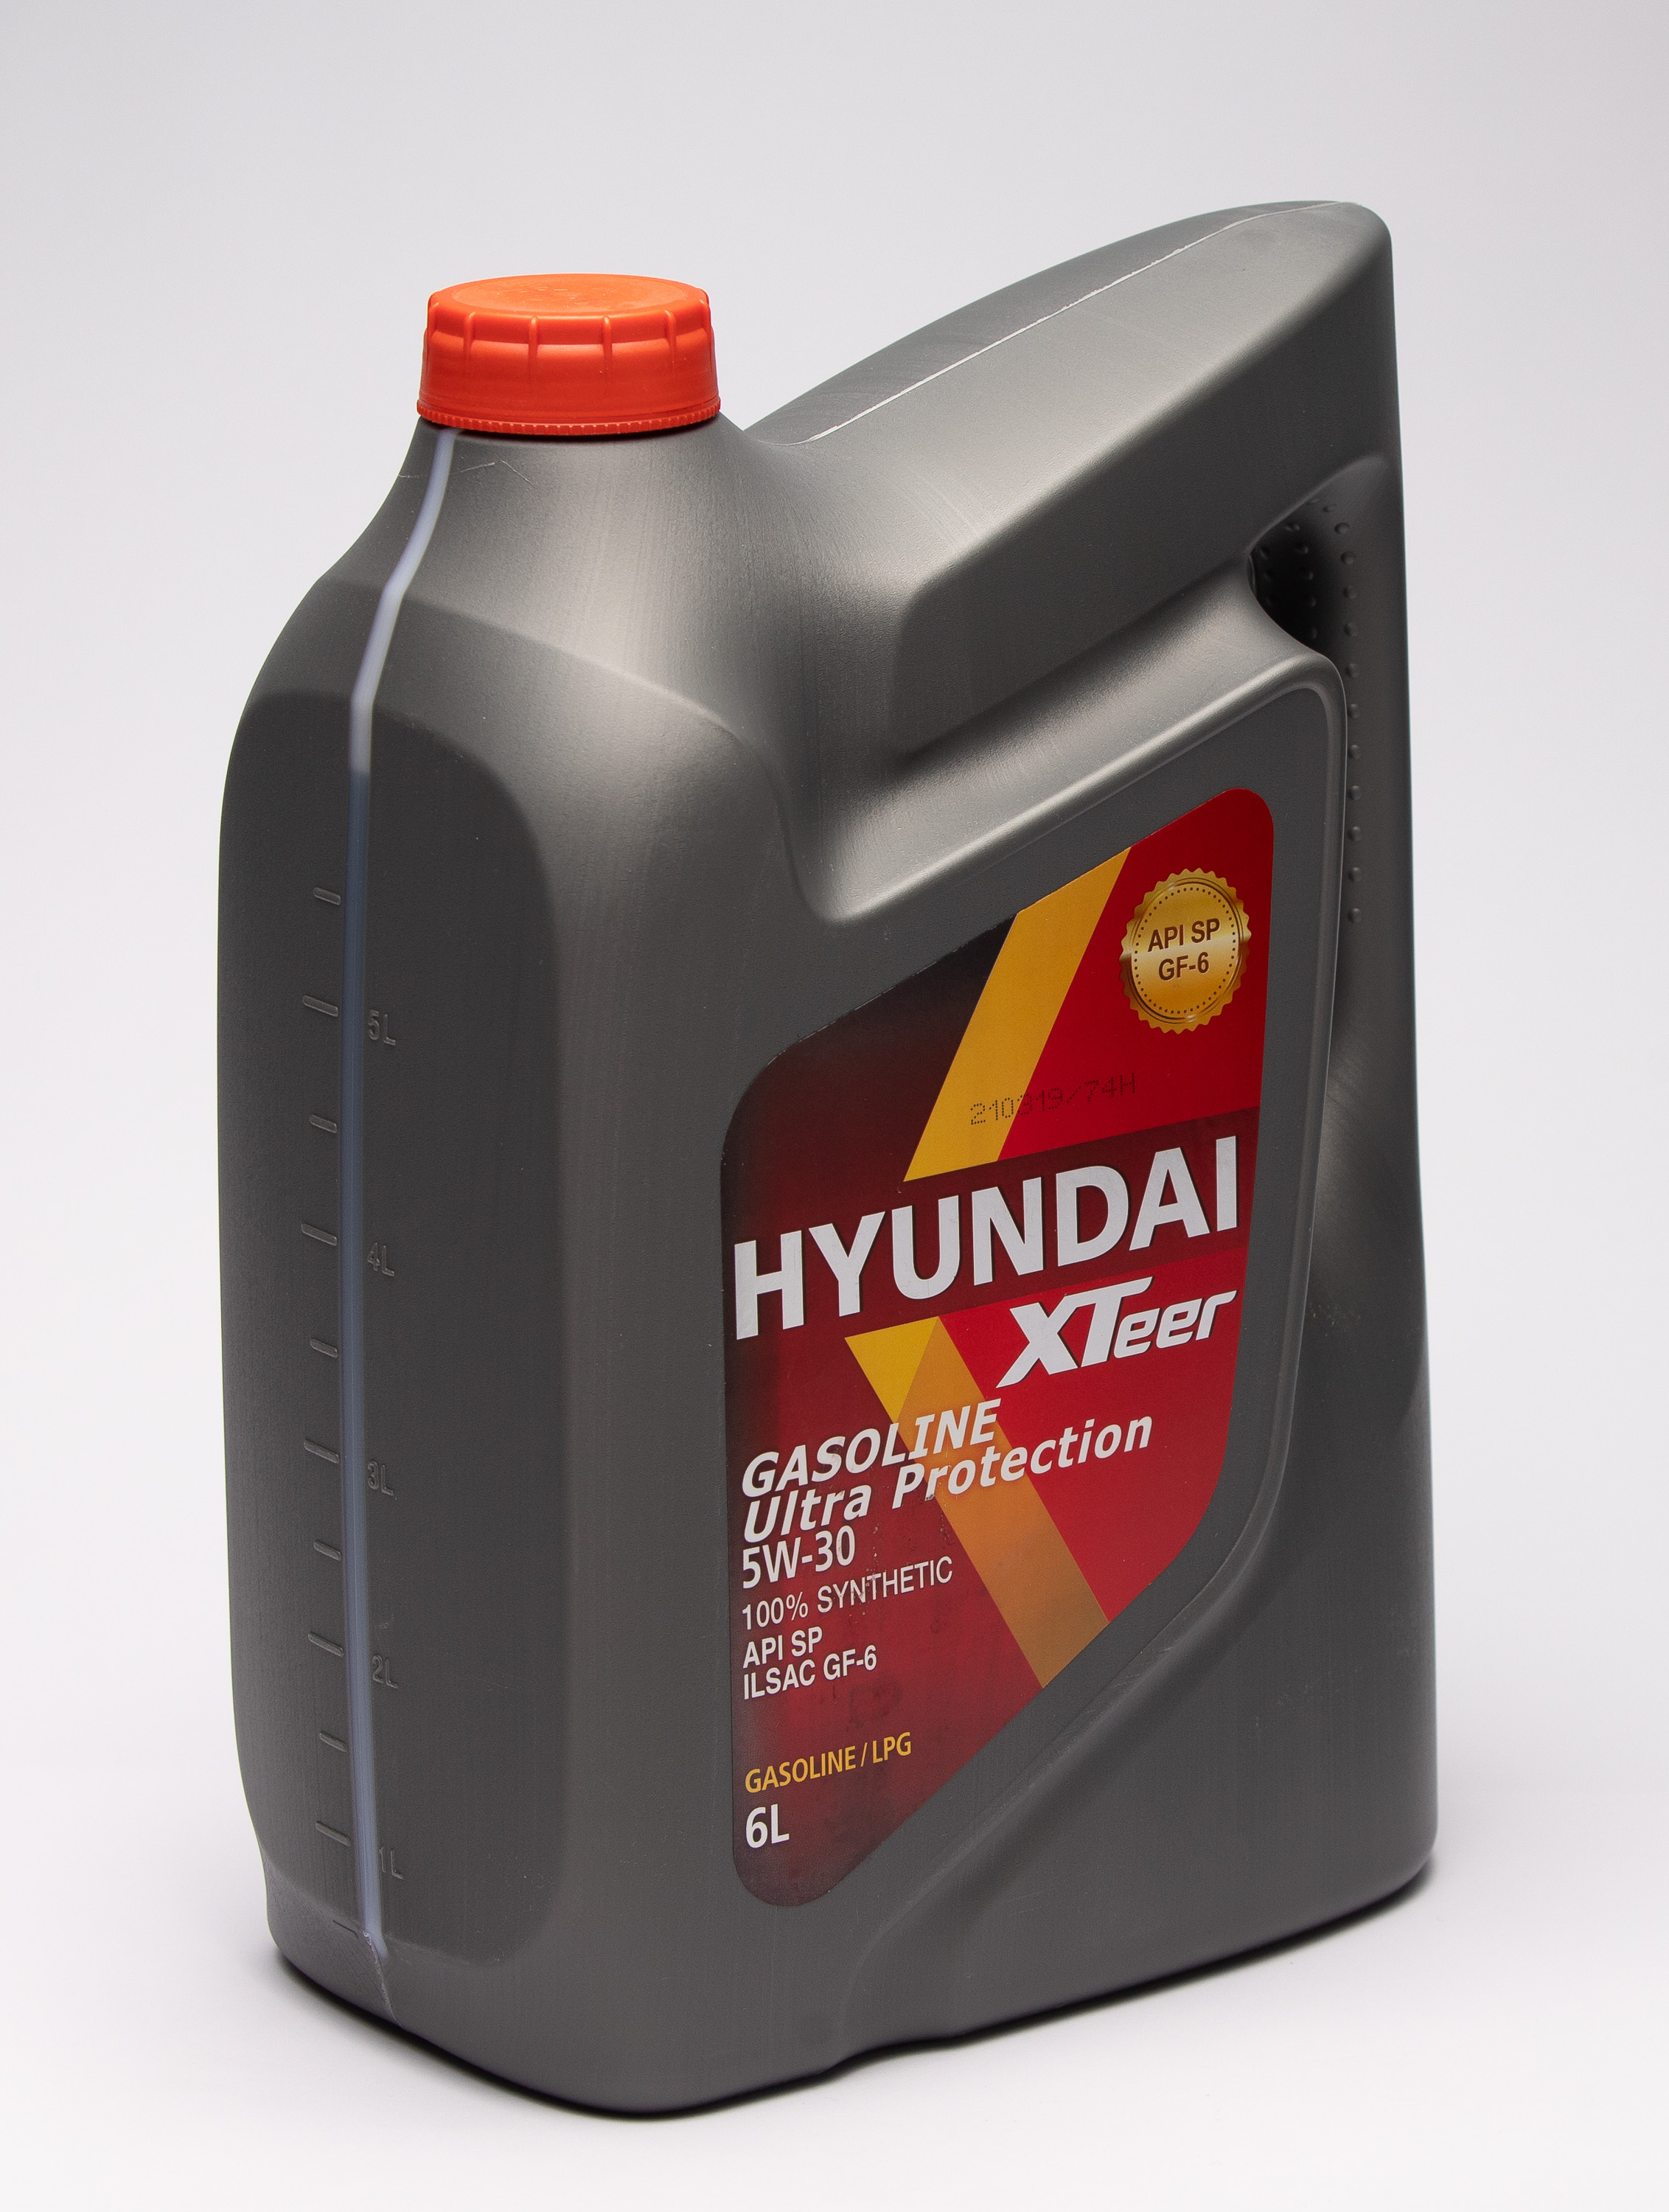 Масло хендай 5в30. Hyundai XTEER gasoline g700 5w-30. Hyundai XTEER 5w30 4л. Hyundai масло XTEER g700. XTEER g700 5w30.